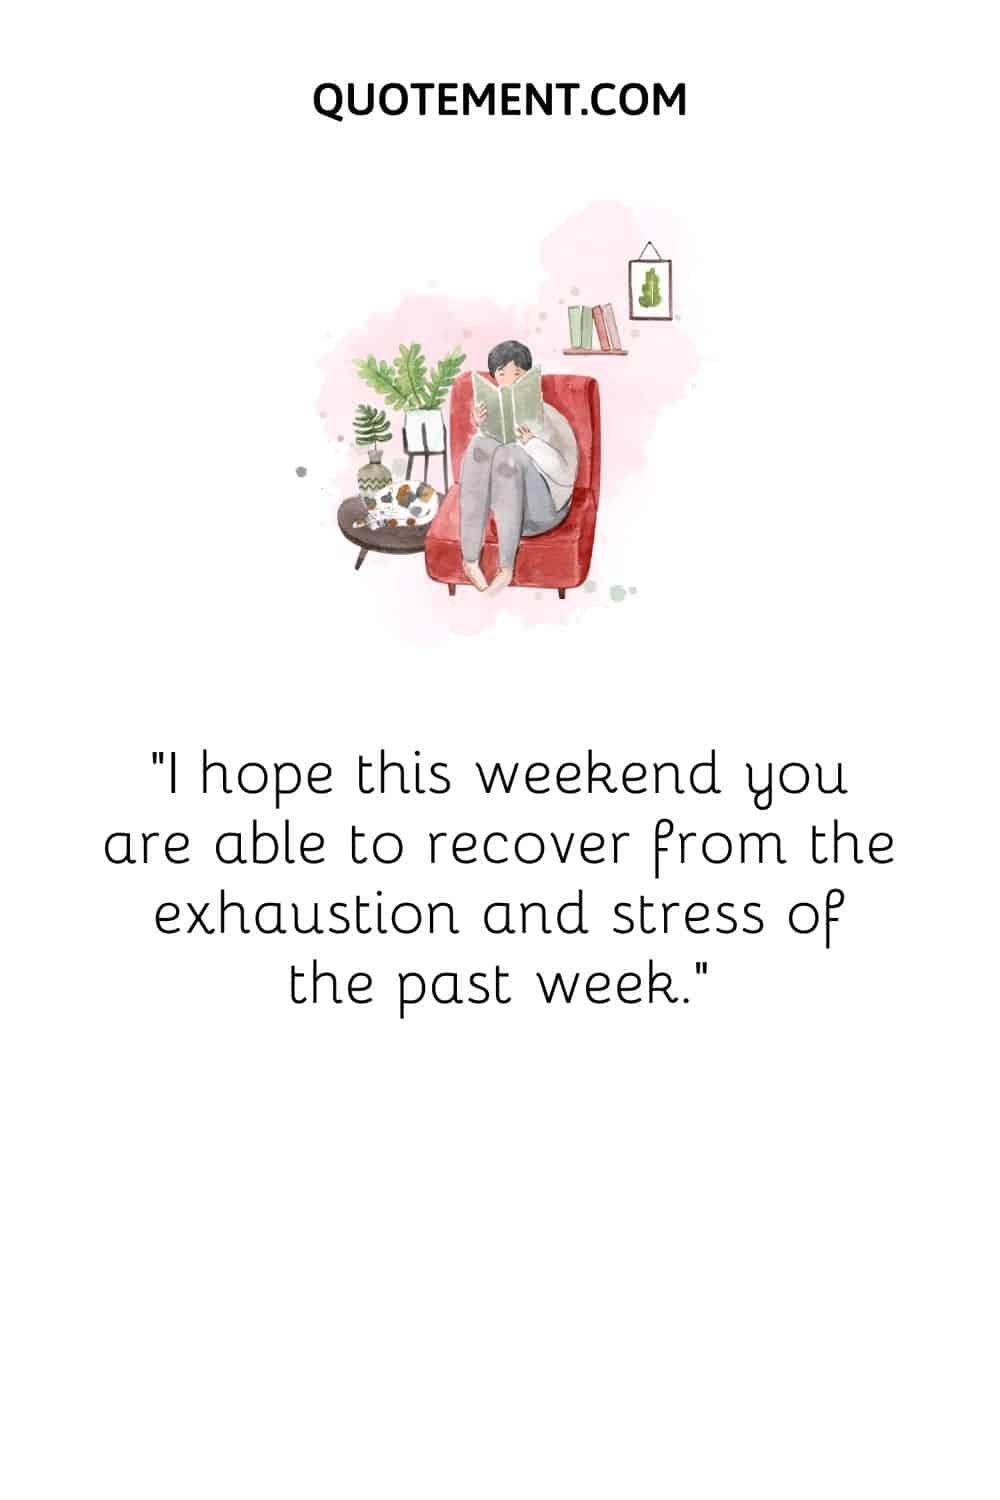 Espero que este fin de semana puedas recuperarte del agotamiento y el estrés de la semana pasada